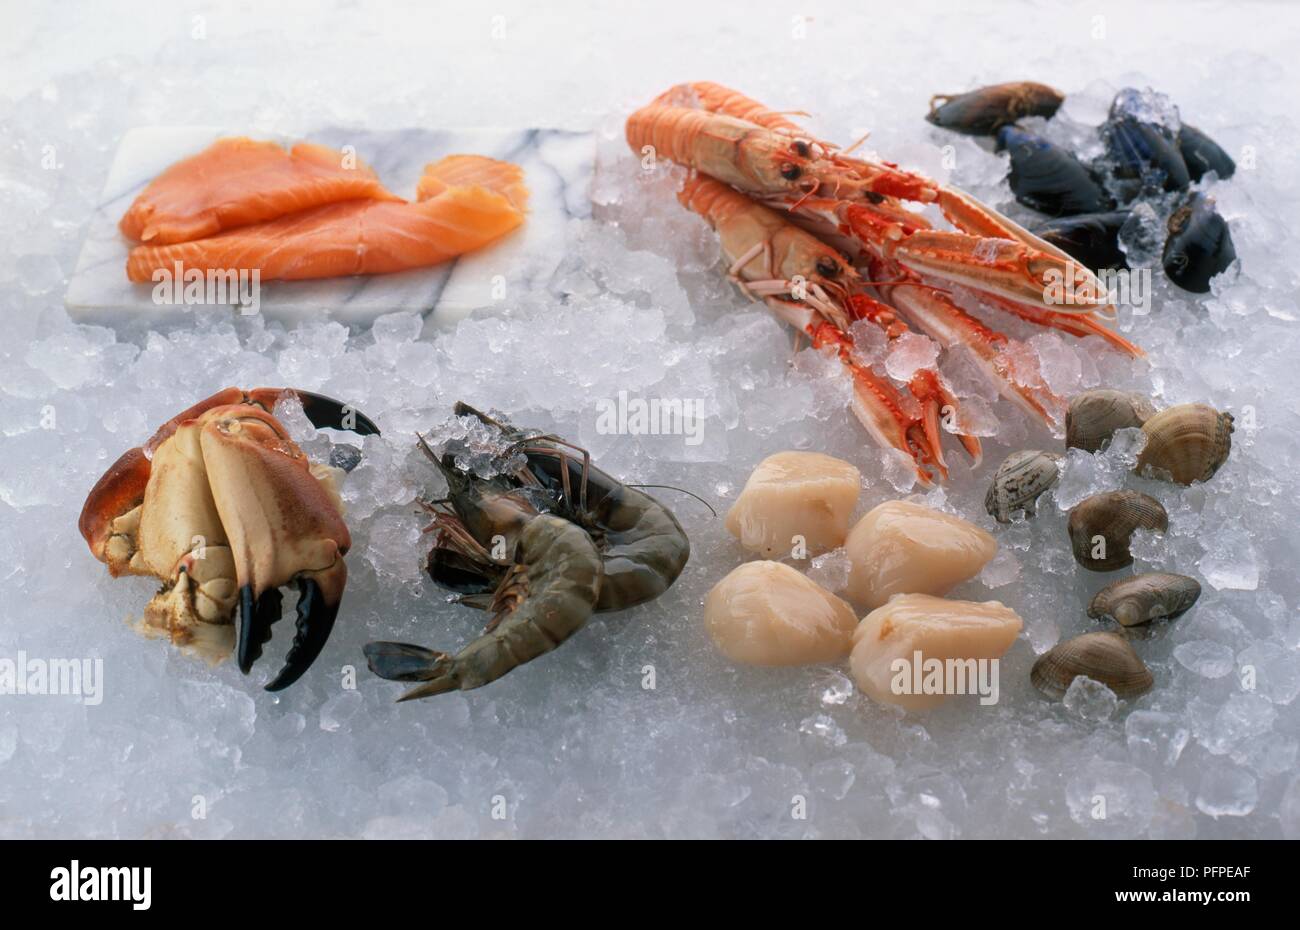 Eine Auswahl an frischen Meeresfrüchten auf Crushed Eis, darunter Krabben, Garnelen, Muscheln, Muscheln, Muscheln, Langusten (Scampi) und geräuchertem Lachs Stockfoto